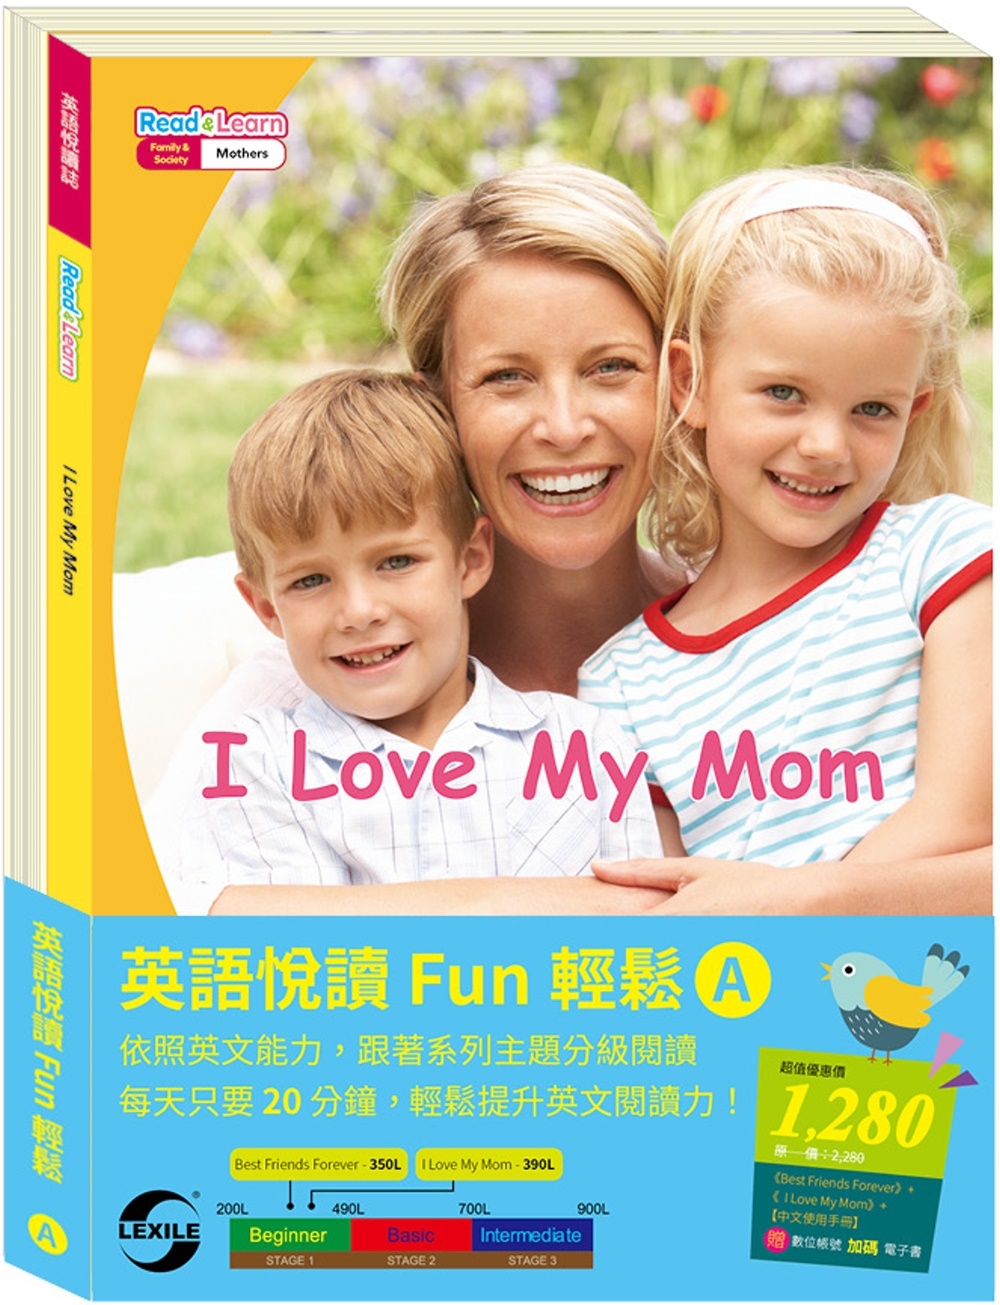 英語悅讀 Fun輕鬆 (A)套組：《Best Friends Forever》+《 I Love My Mon》+ 中文使用手冊